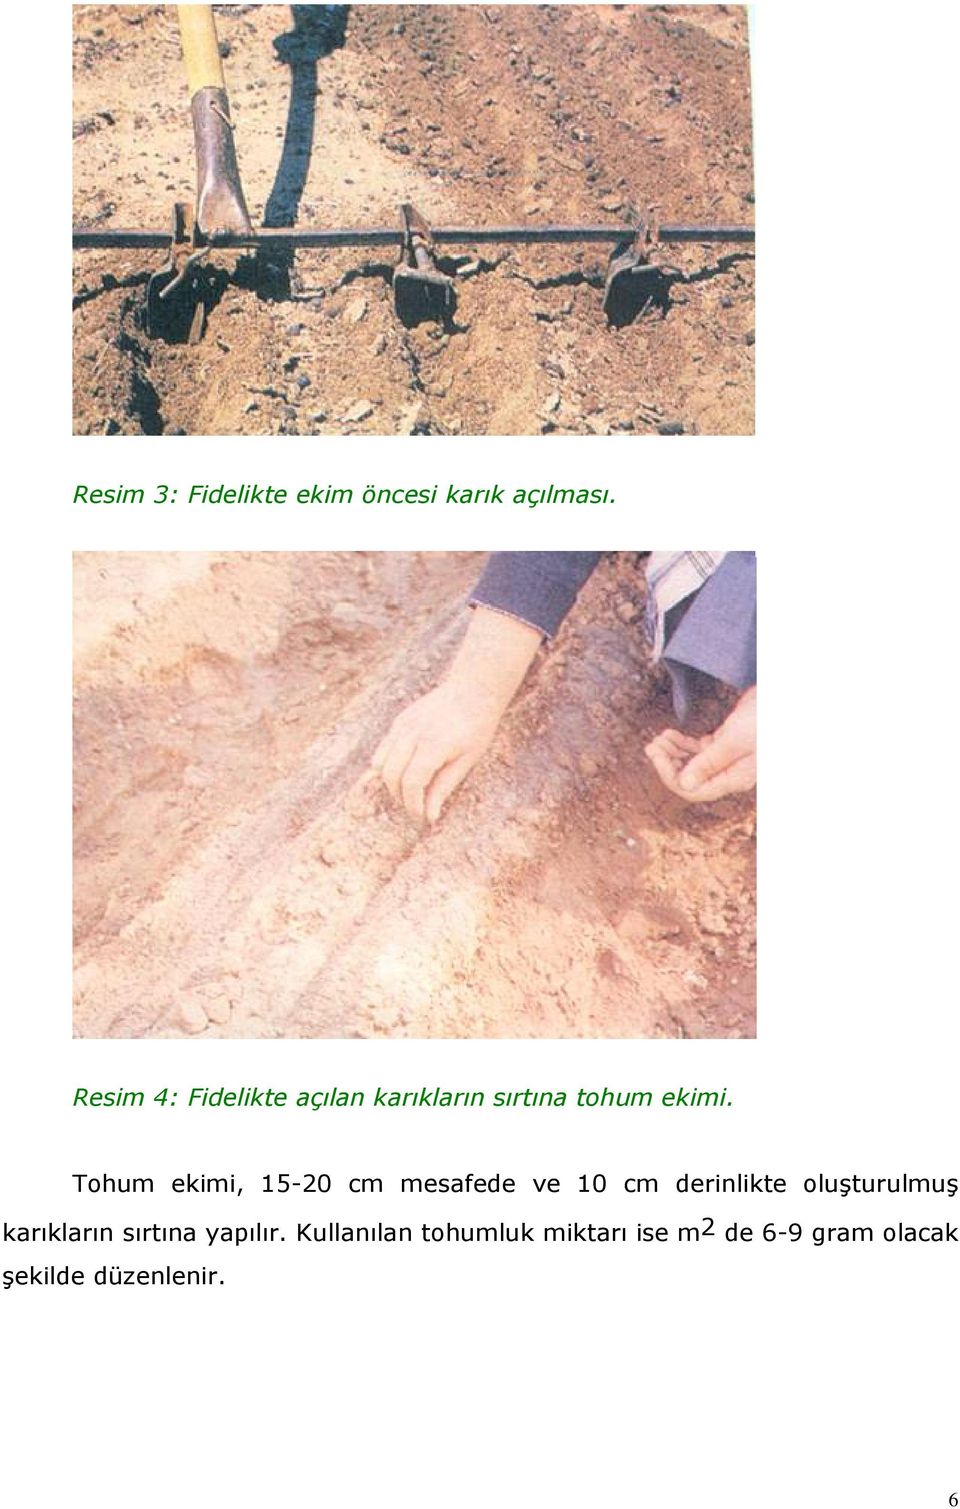 Tohum ekimi, 15-20 cm mesafede ve 10 cm derinlikte oluşturulmuş